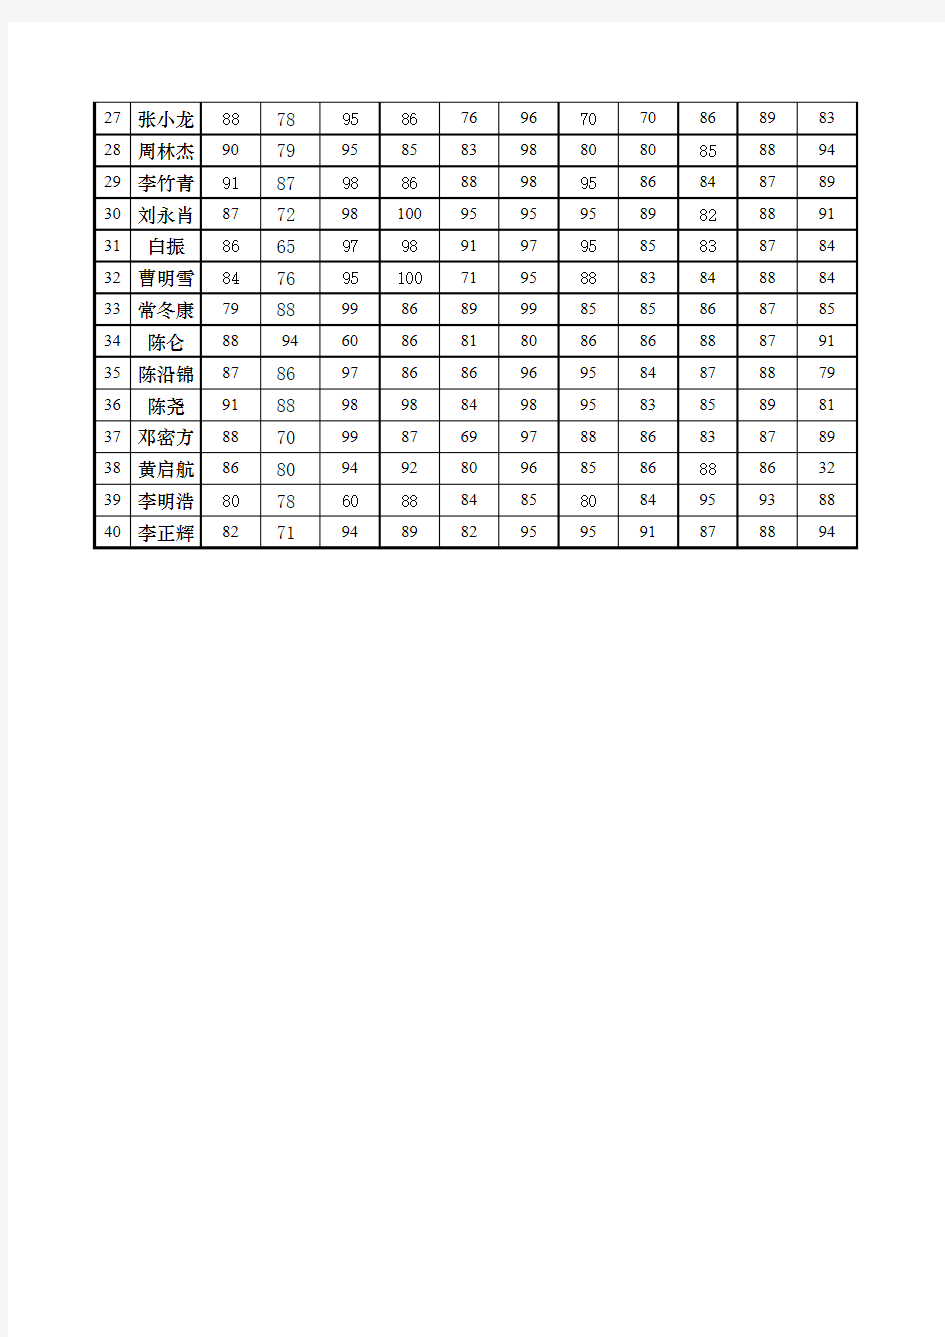 2.2013-2014学年第二学期成绩统计表